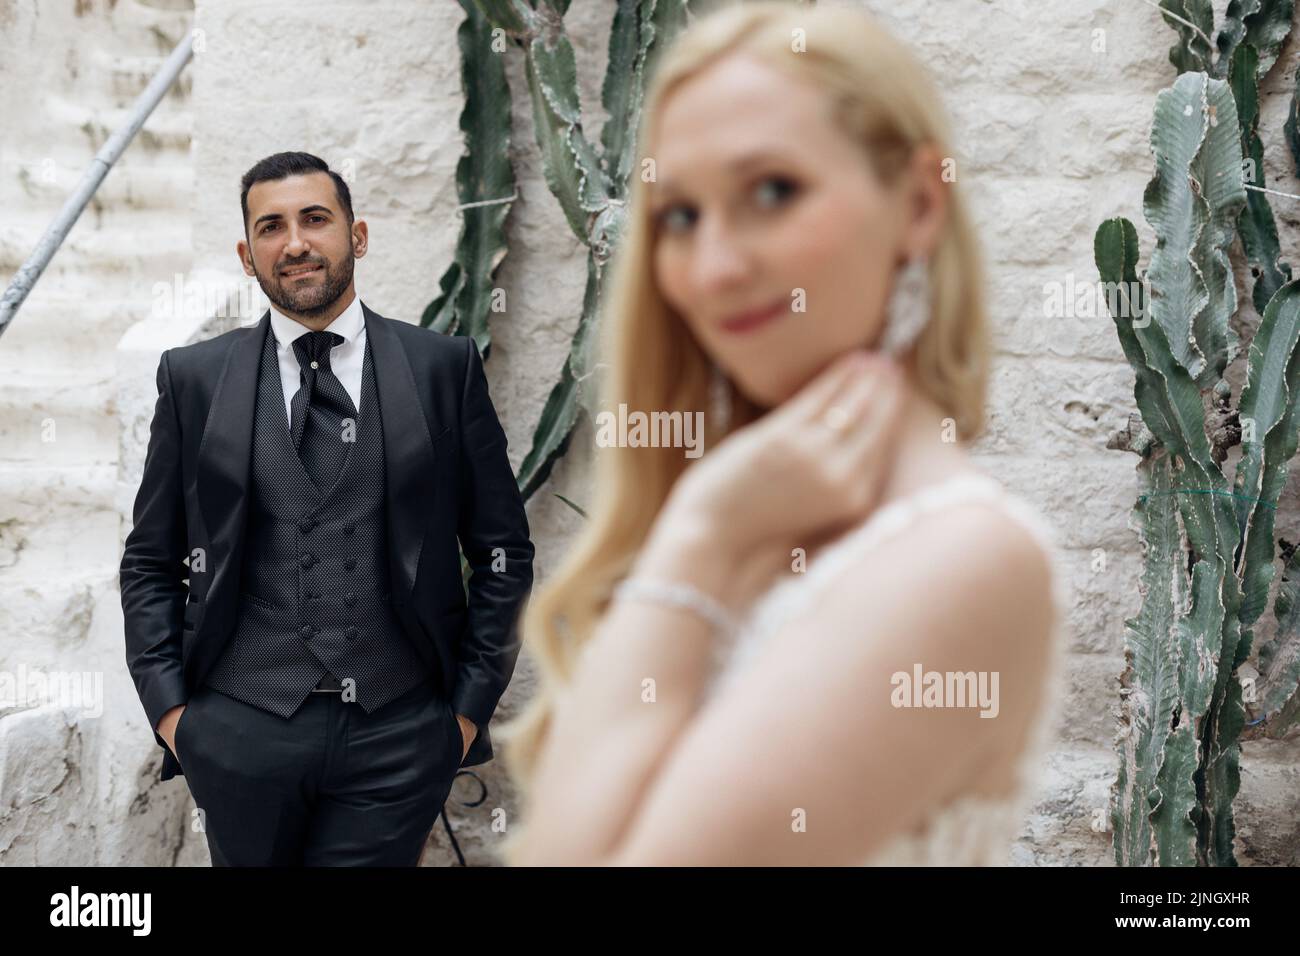 Porträt eines Ehepaares, das in der Nähe einer weißen Ziegelmauer steht. Bräutigam im Anzug bewundernd Braut, jammend Hände in die Taschen. Stockfoto